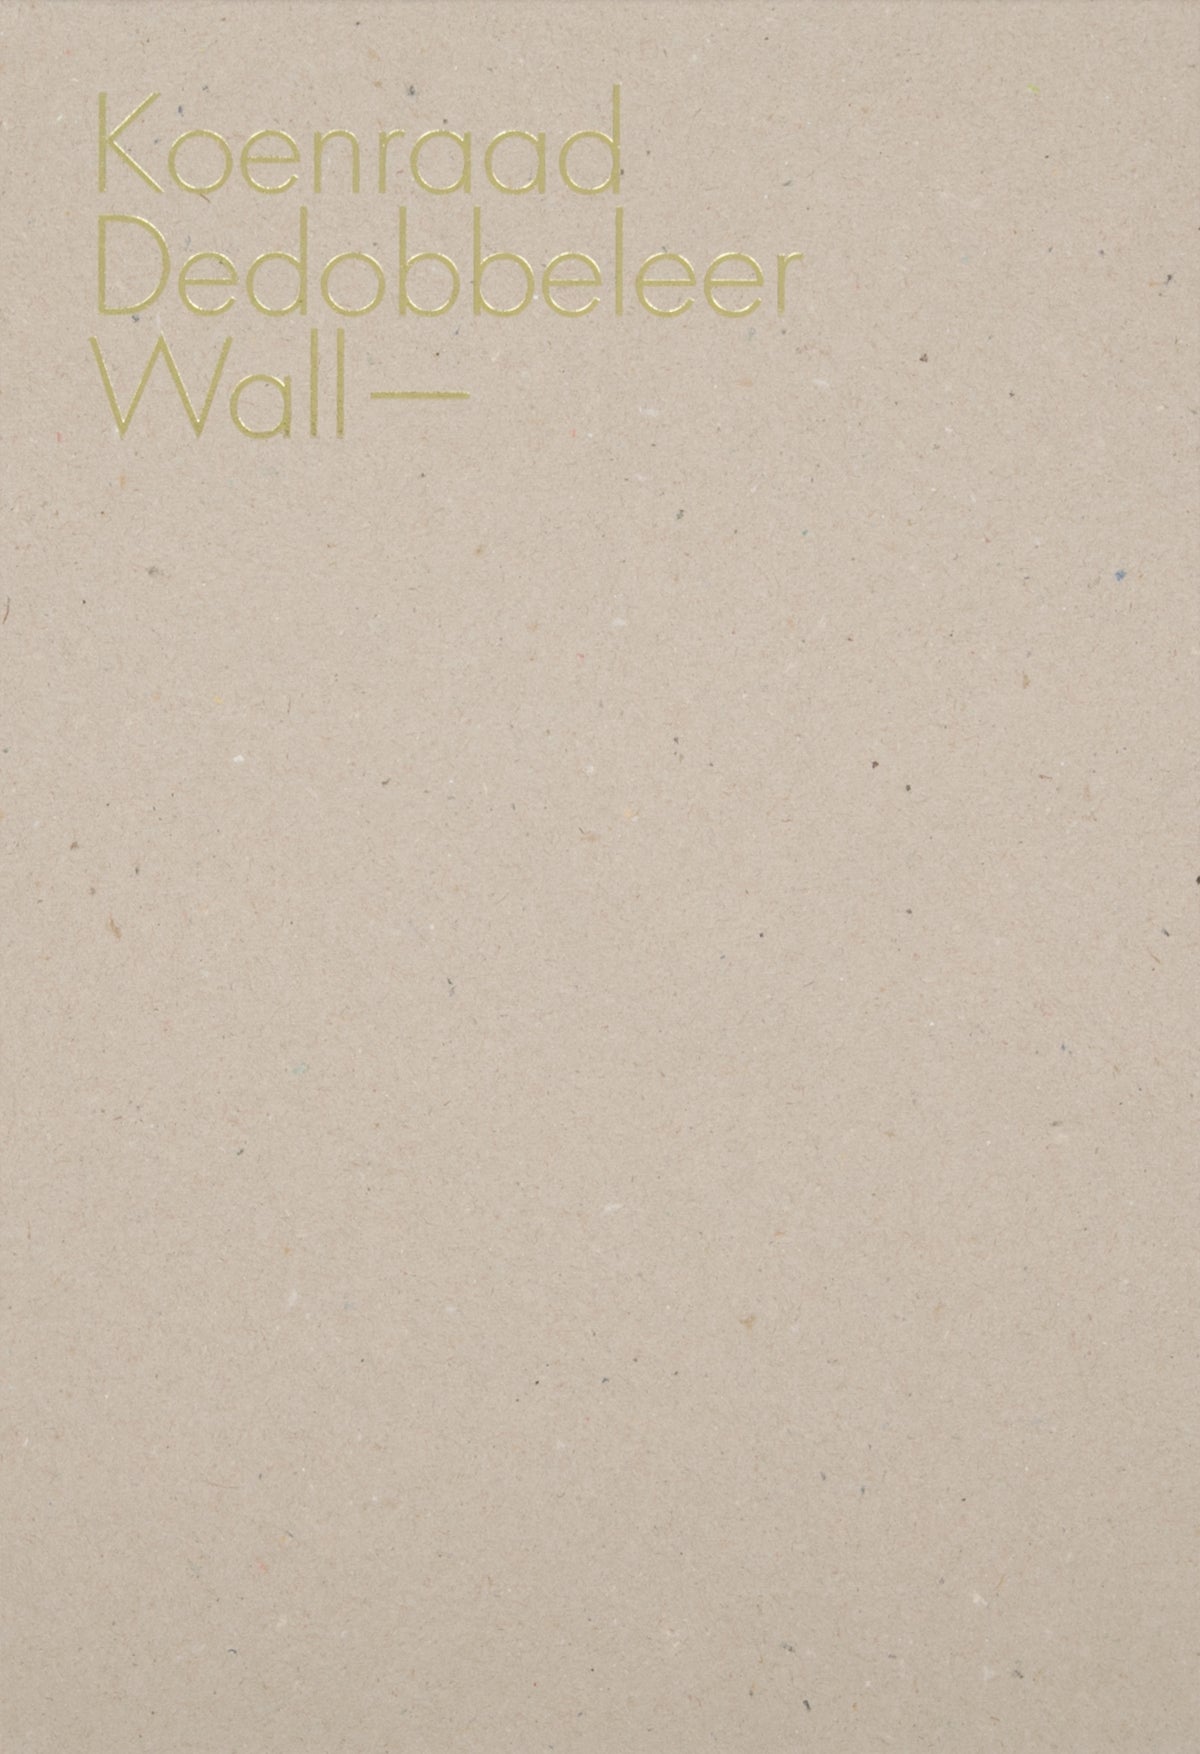 Wall—